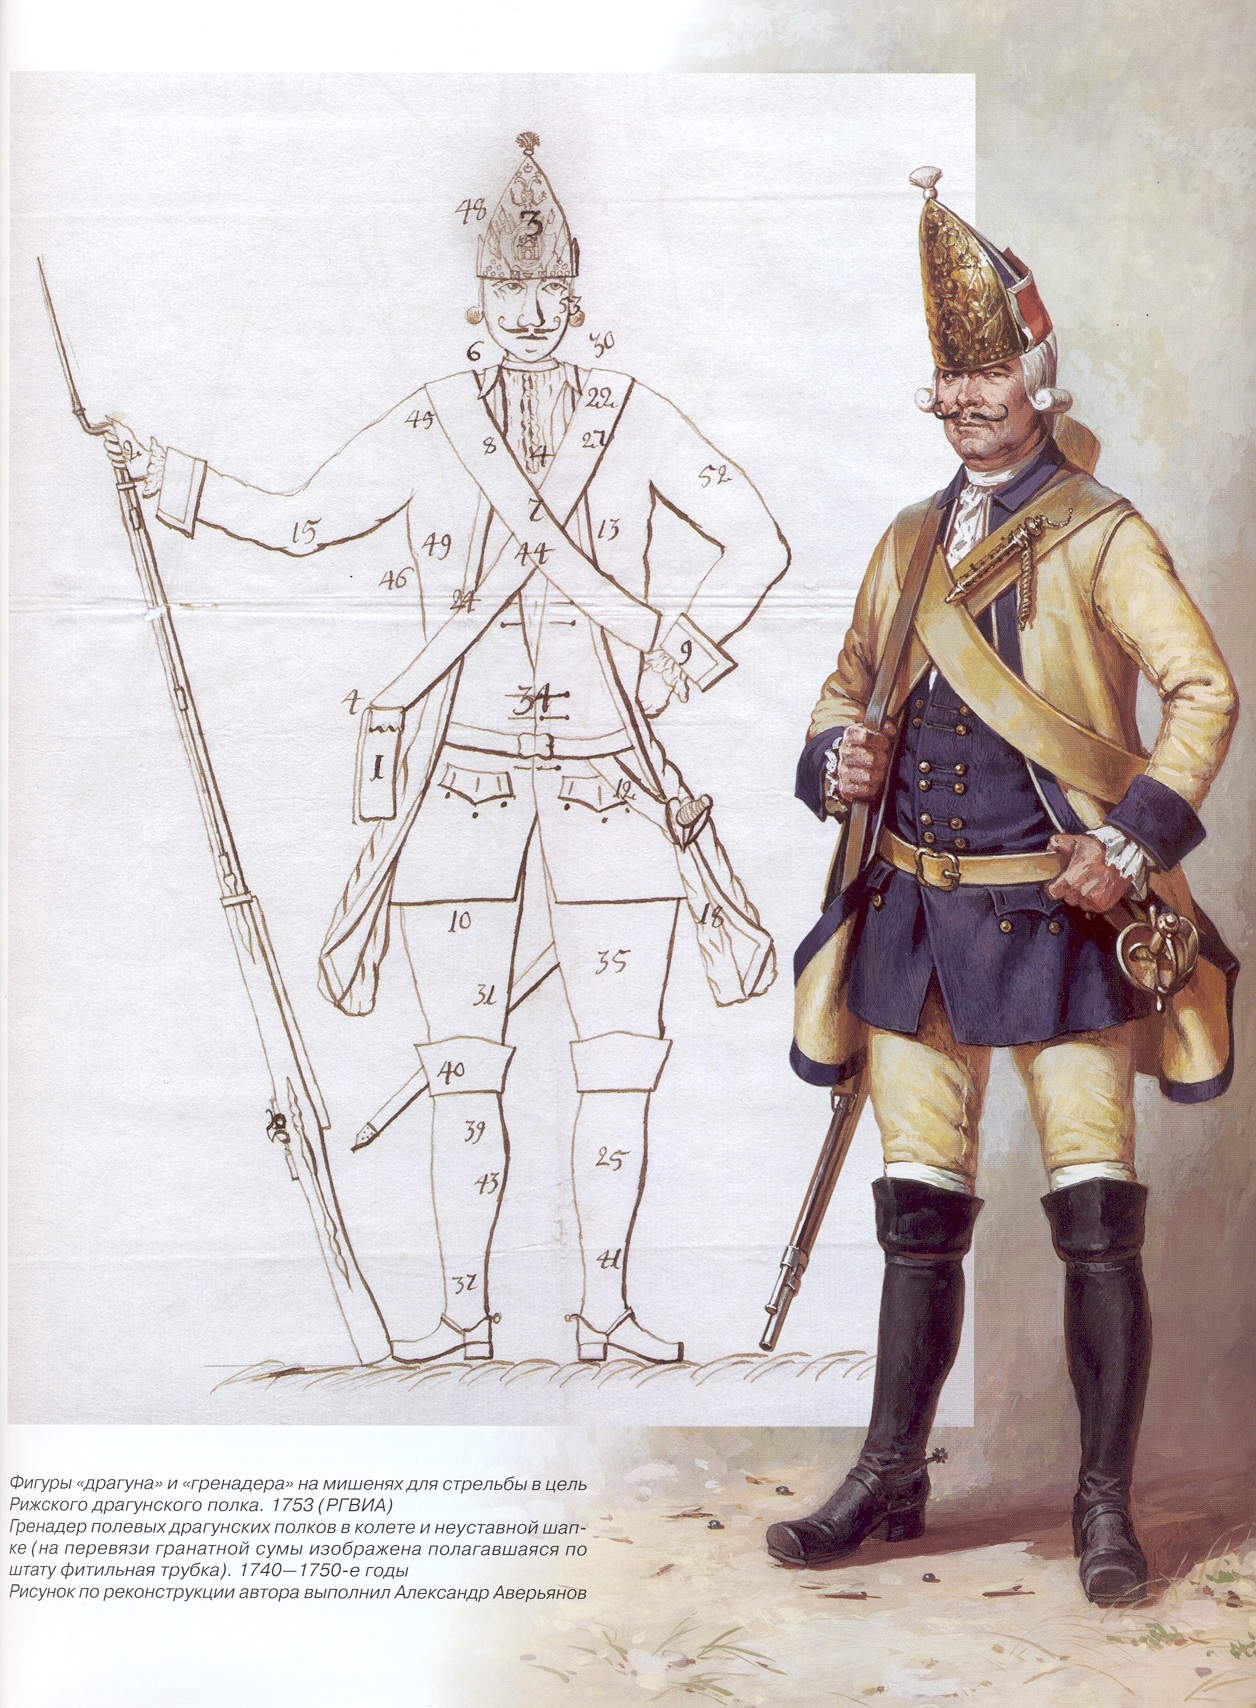 Гренадеры русской армии 18 века